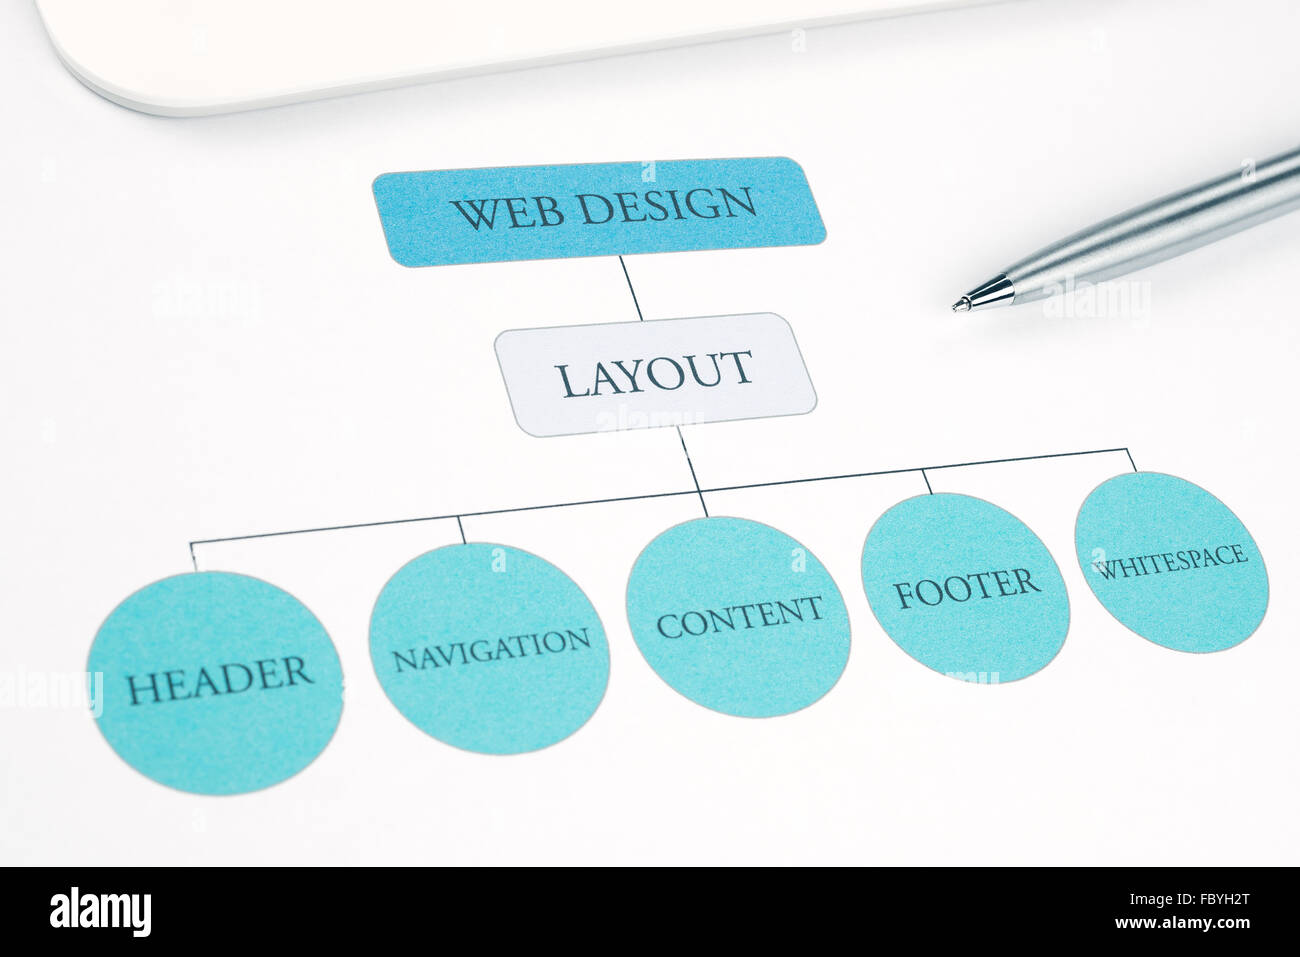 Konzeptionelle Web Design Komponente Layout Flussdiagramm Bauplan. Stift und Touchpad Tablet auf Hintergrund. Blau getönt Stockfoto